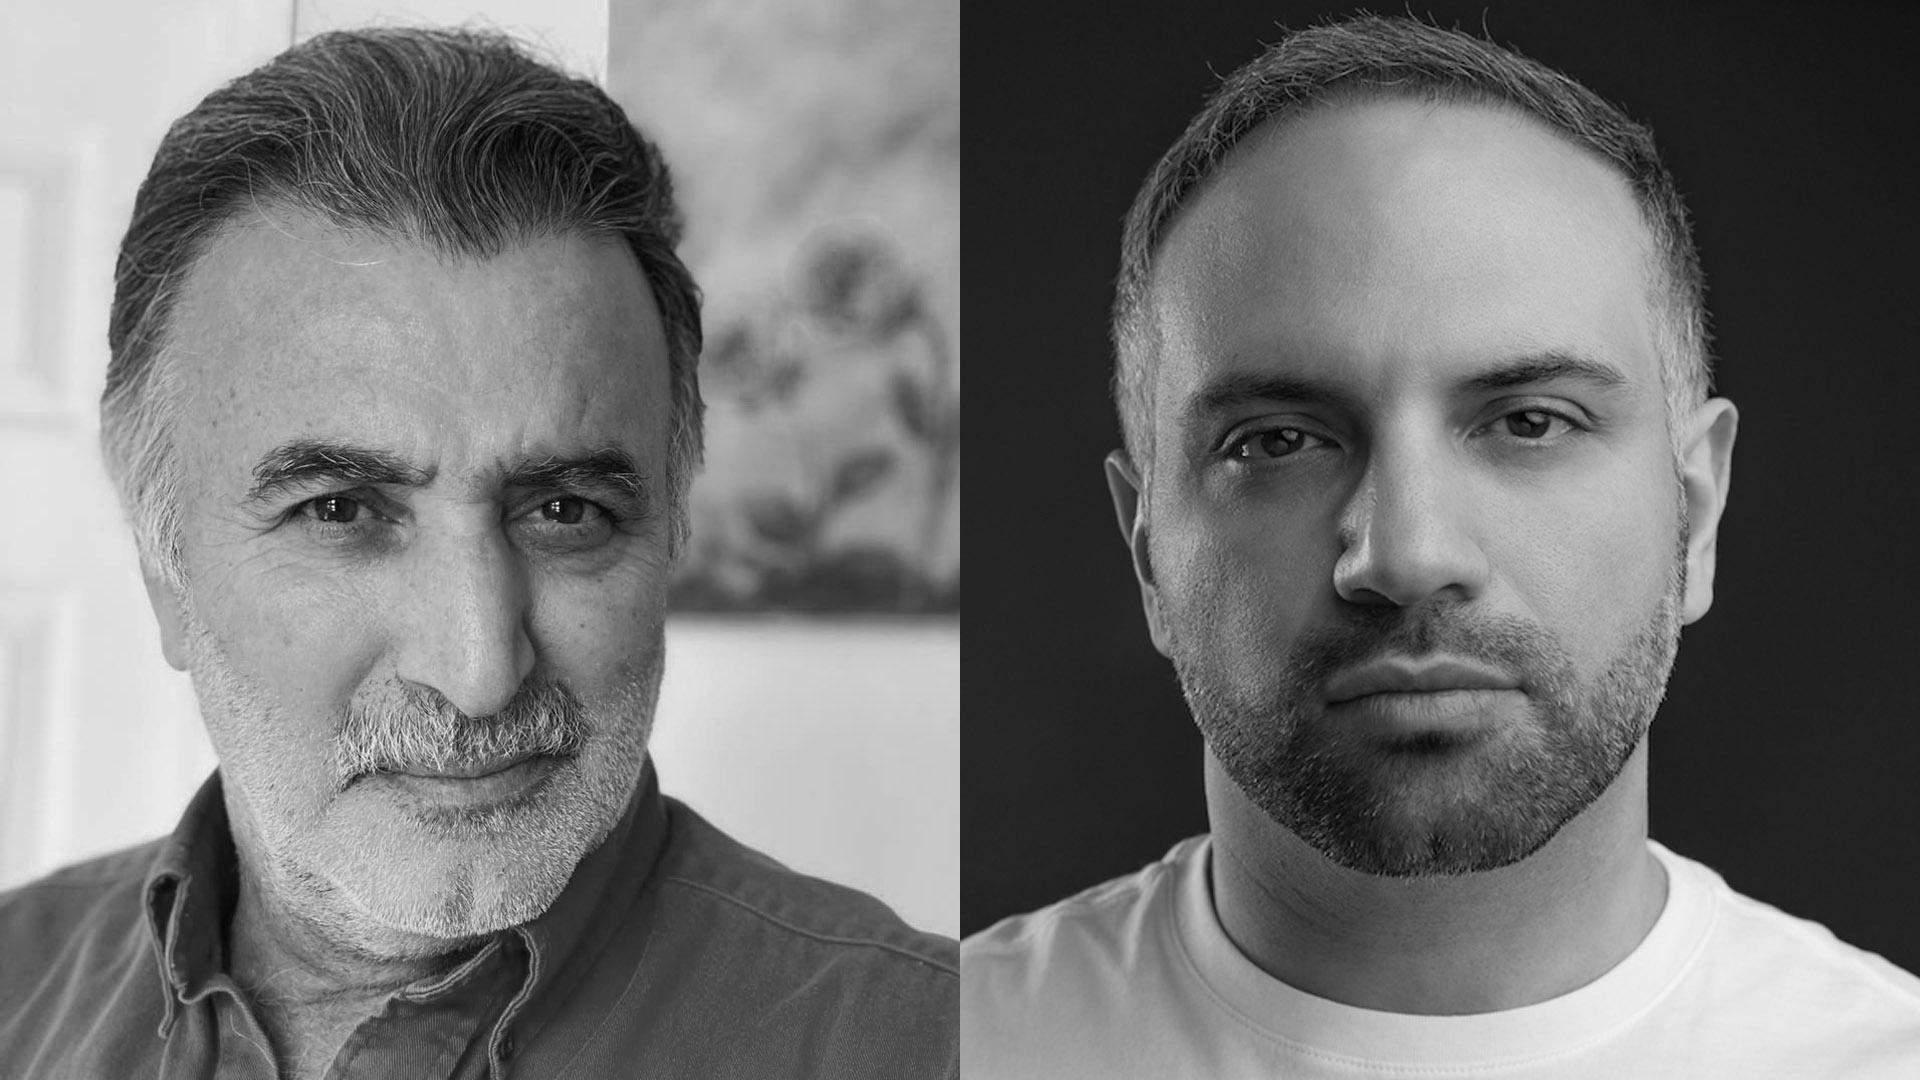 Jamal Saeed & Saeed Teebi headshots